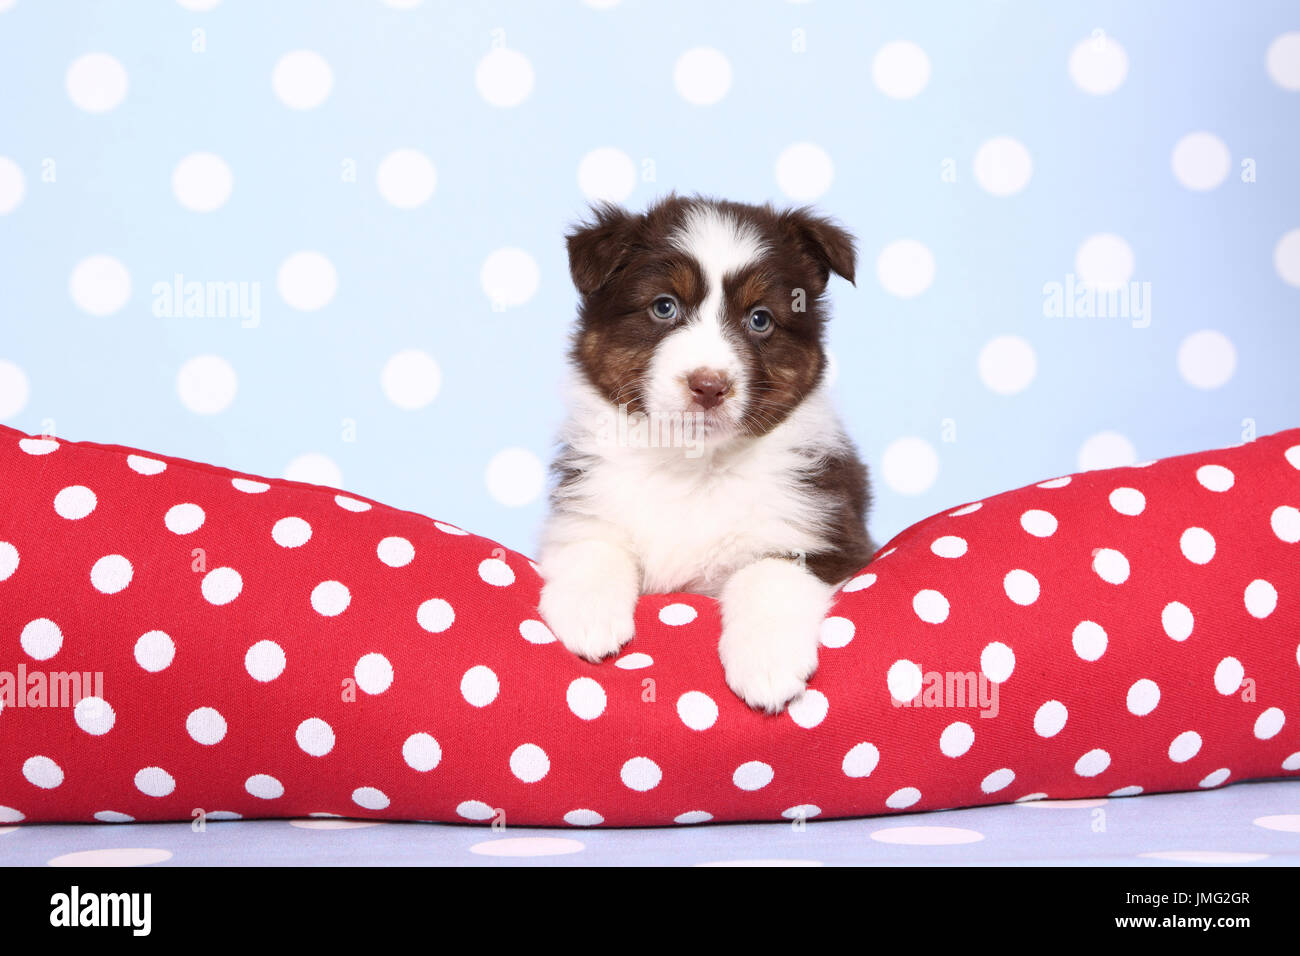 Pastore australiano. Cucciolo (6 settimane di età) giacente su un rosso cushiont con il bianco a pois. Studio Immagine contro uno sfondo blu con il bianco a pois. Germania Foto Stock